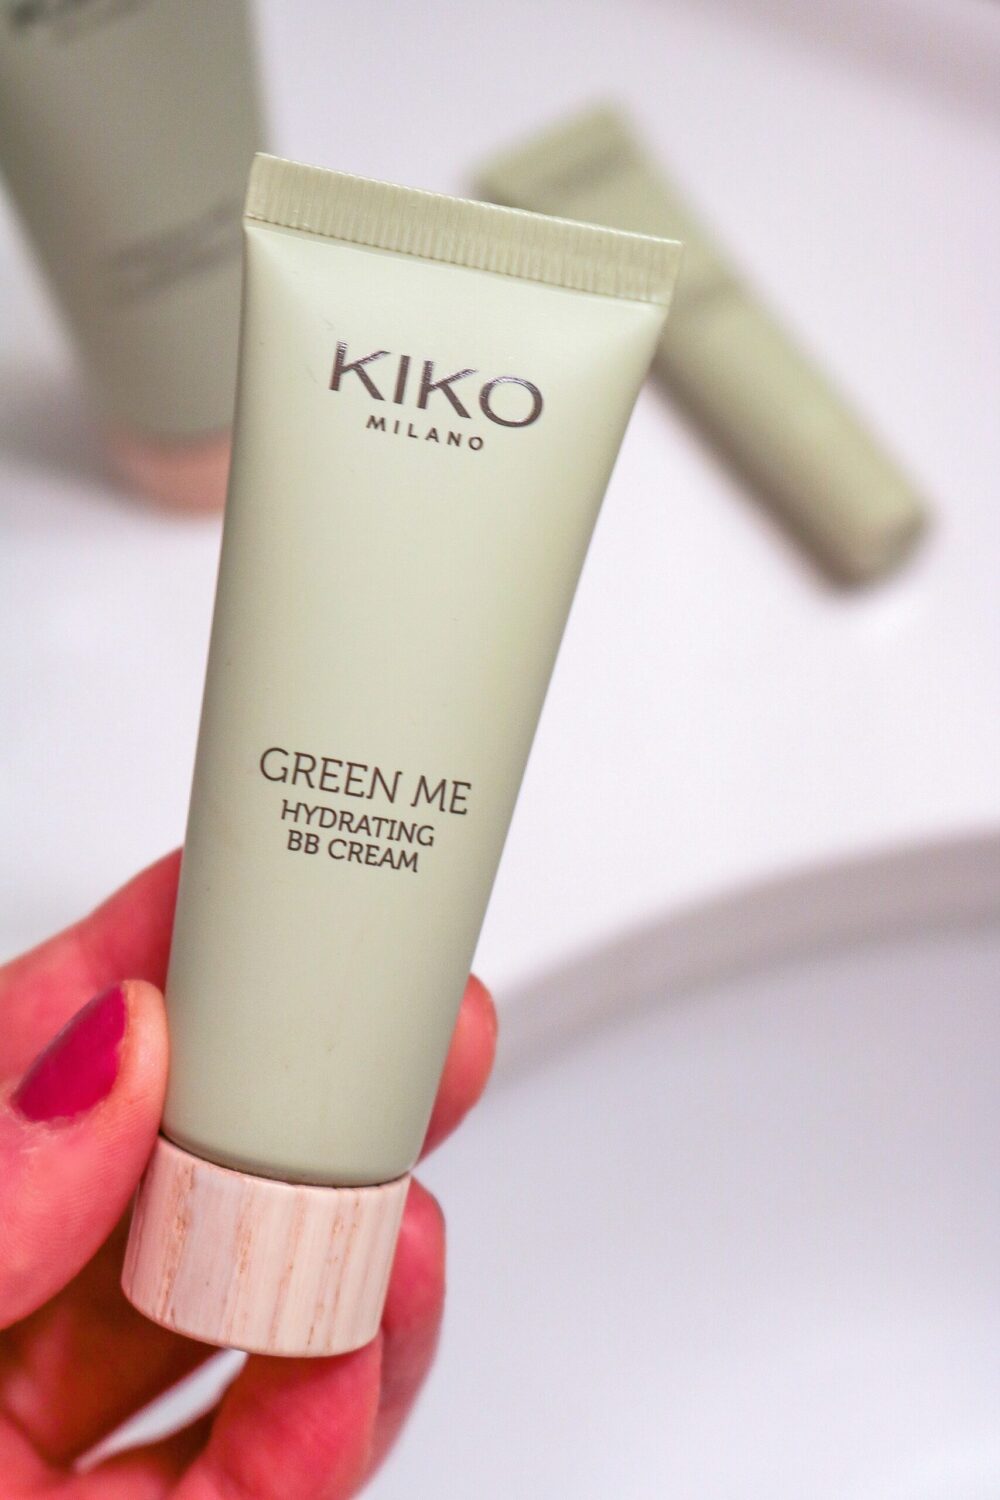 KIKO Eco-Friendly Skincare and Makeup I Green Me BB Cream #cleanbeauty #veganbeauty #skincare #beautyblog